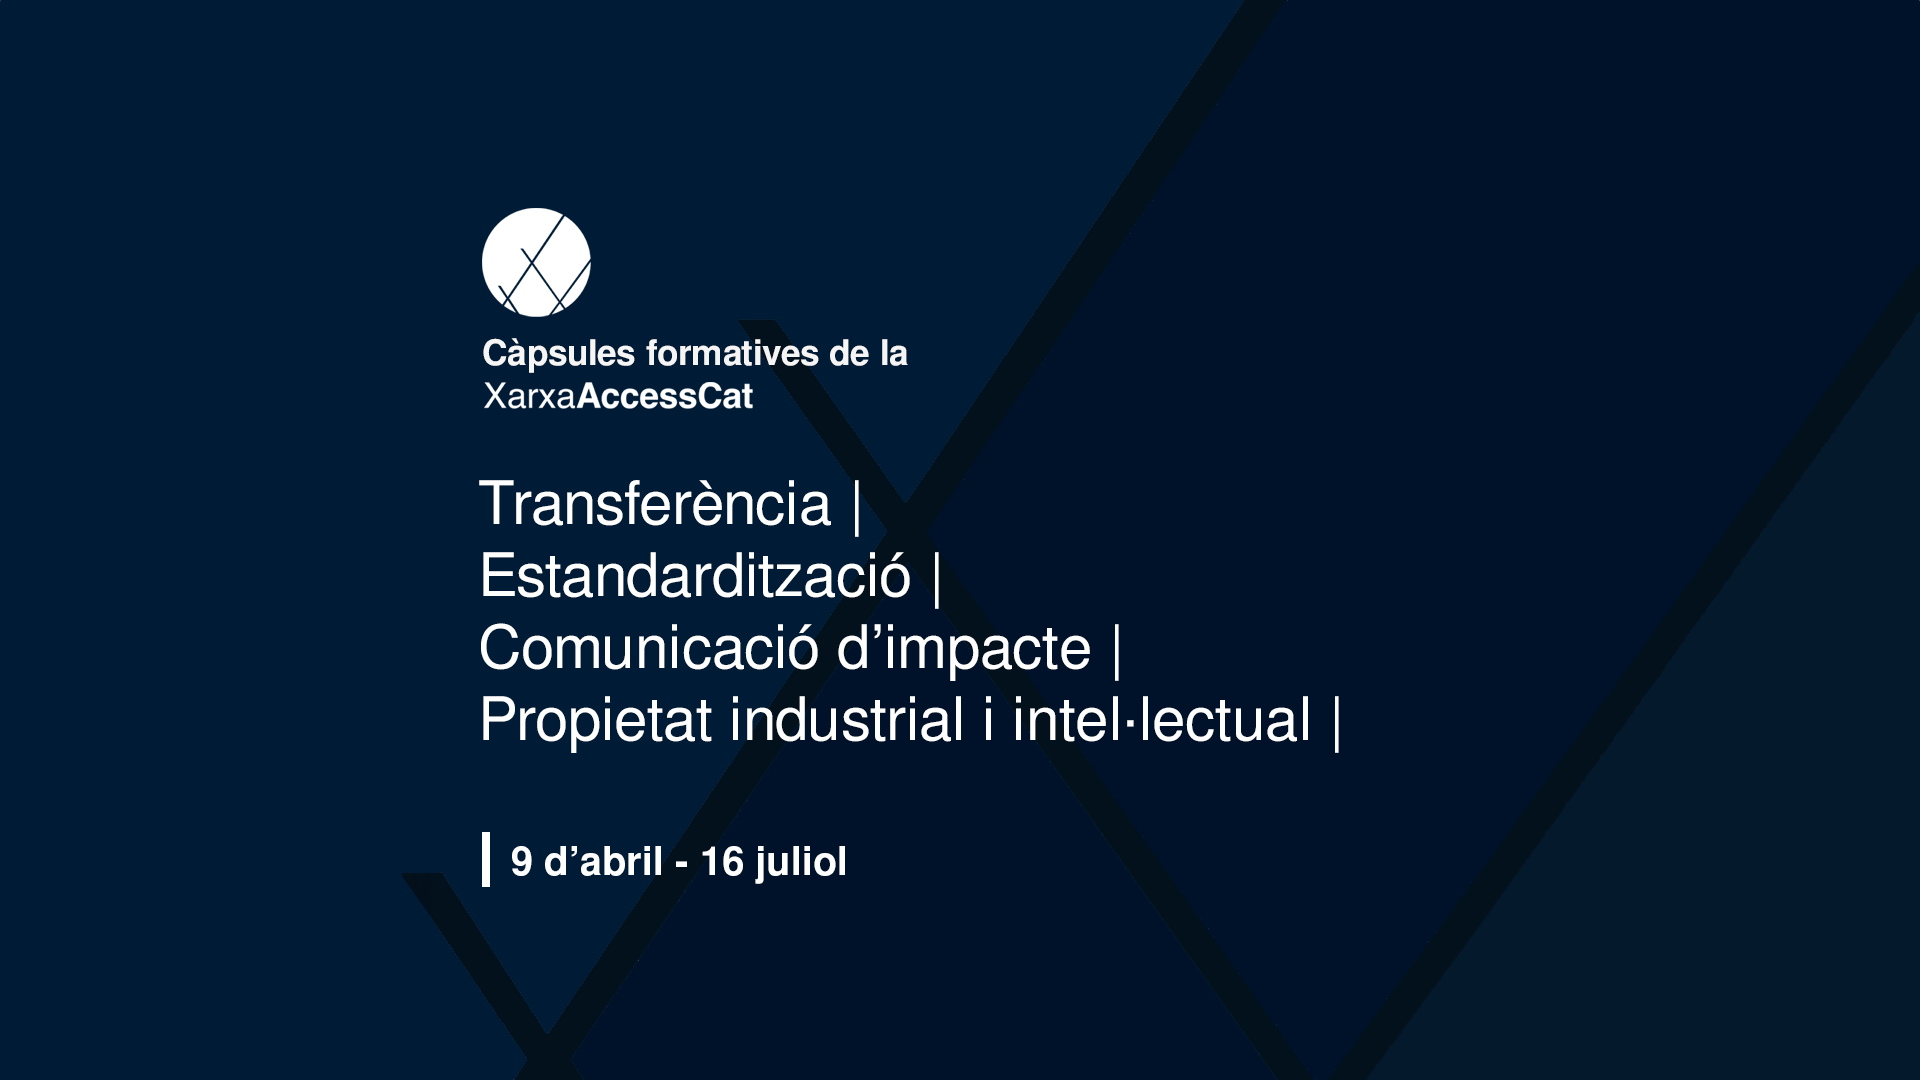 Cápsulas formativas de la Red AccessCat. Descubre más sobre transferencia, estandarización, comunicación de impacto y propiedad industrial e intelectual